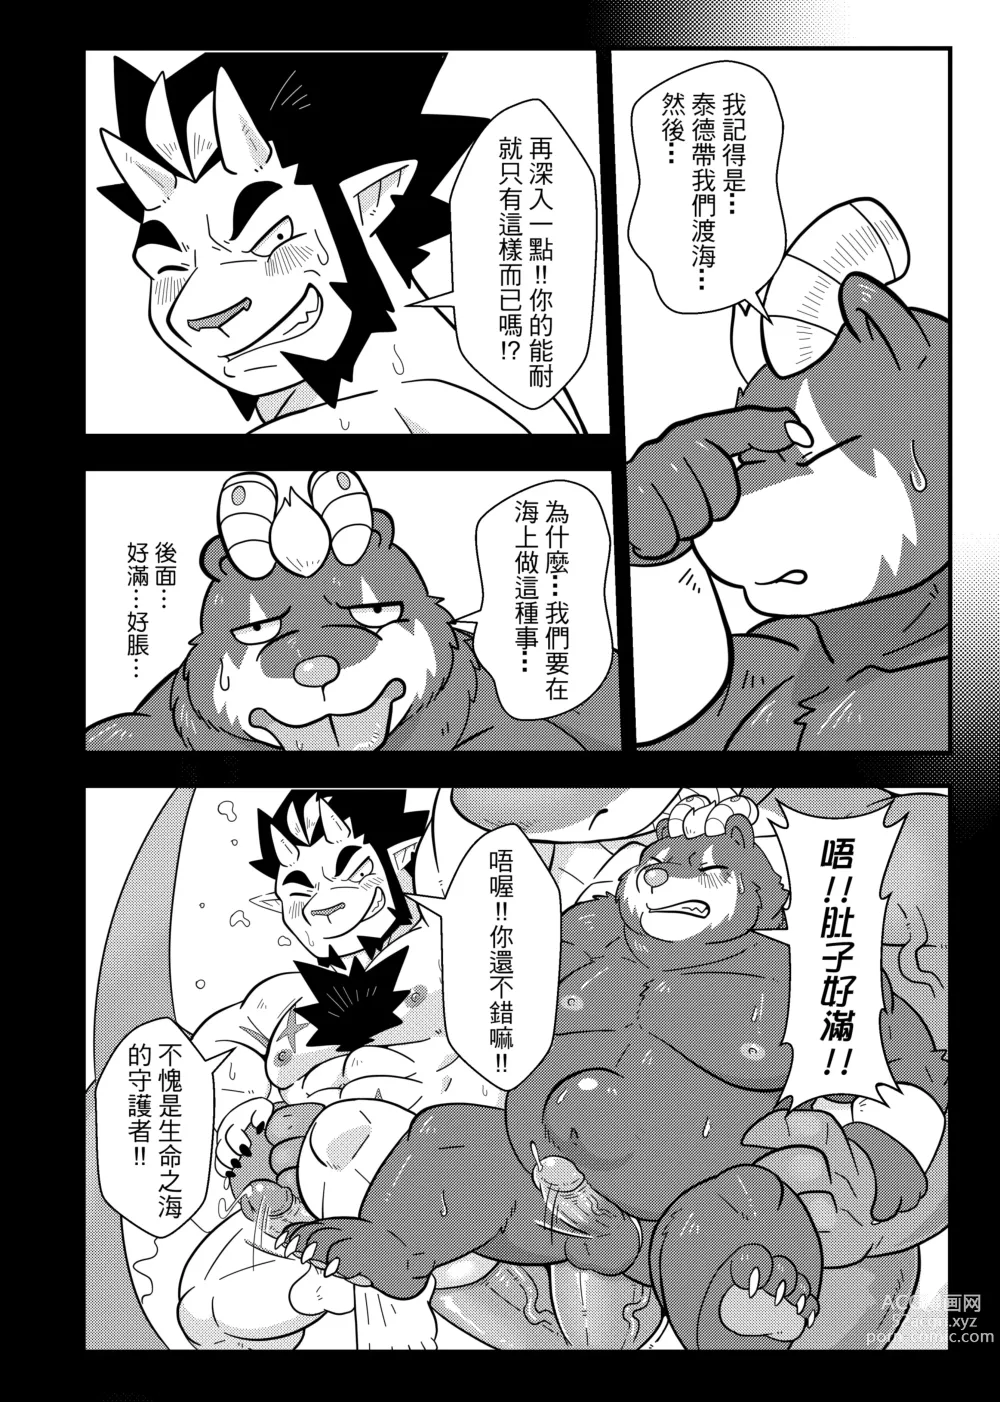 Page 3 of doujinshi 勇者的大小只有魔王塞得下4